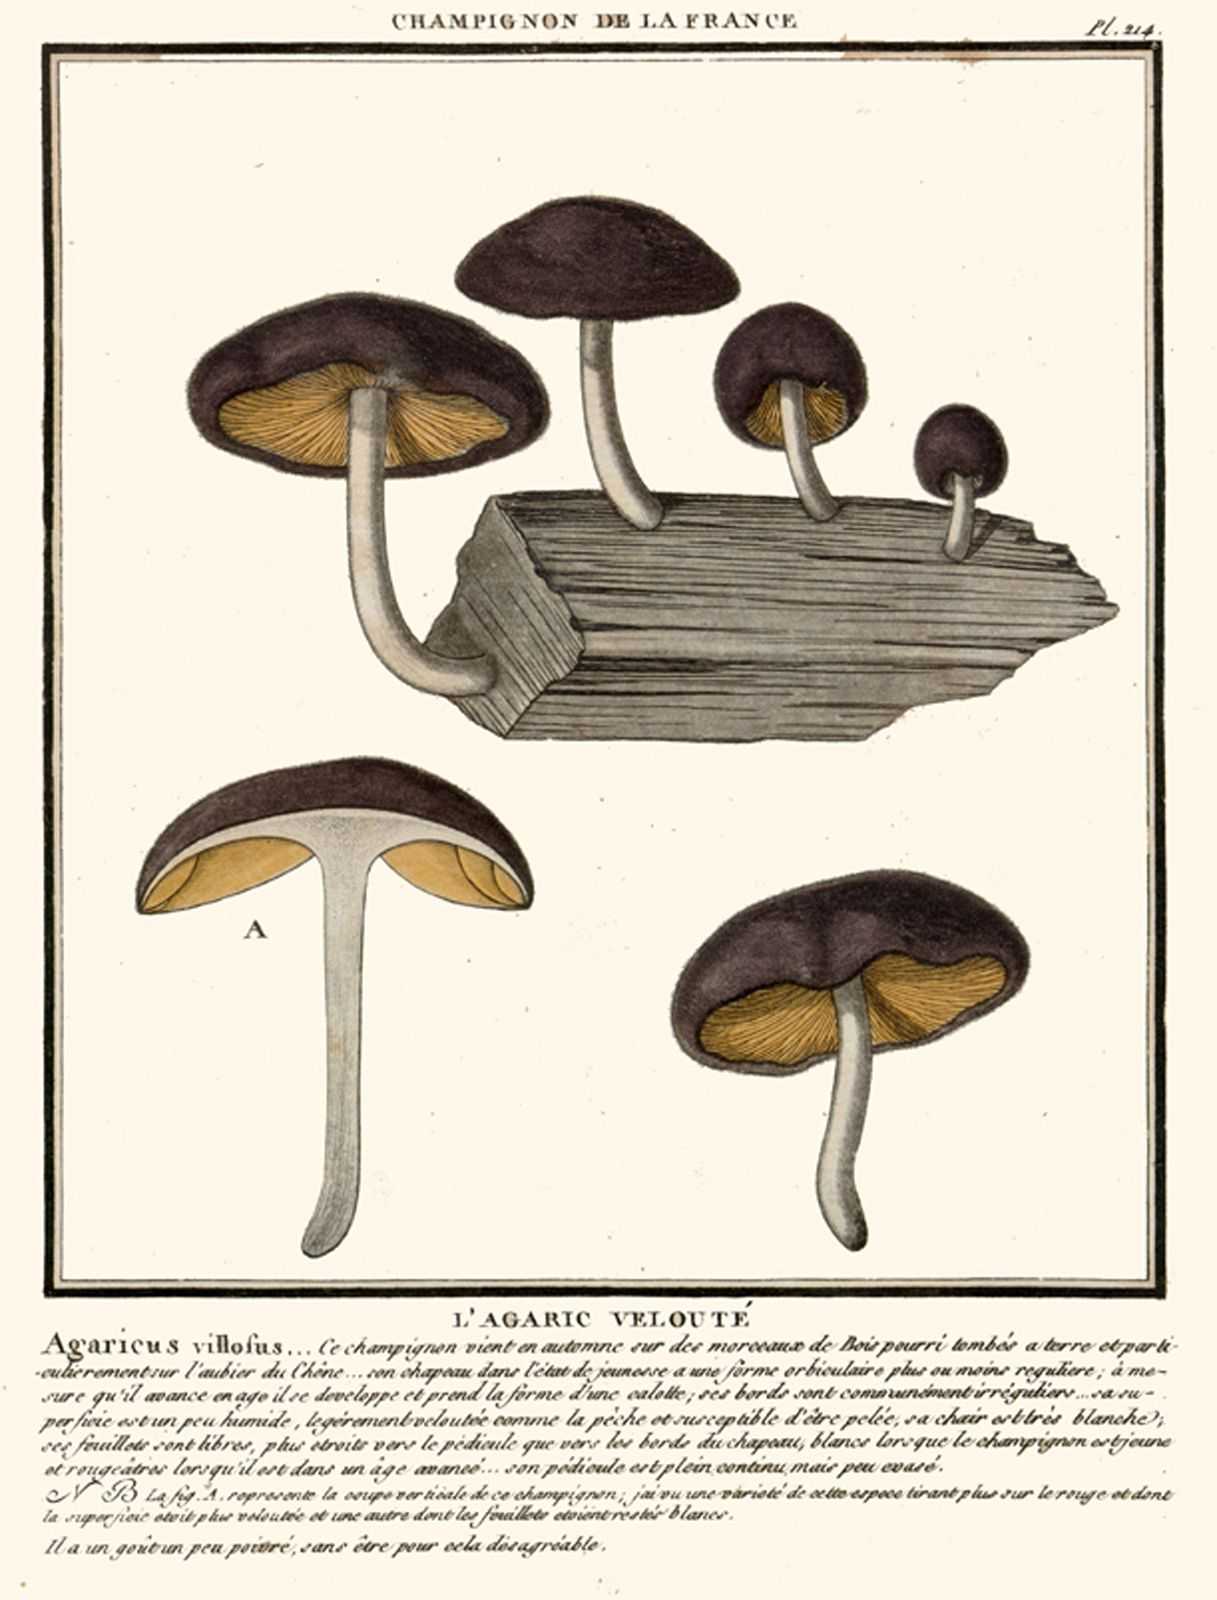 Плютей золотистожилковый (pluteus chrysophlebius) –  грибы сибири